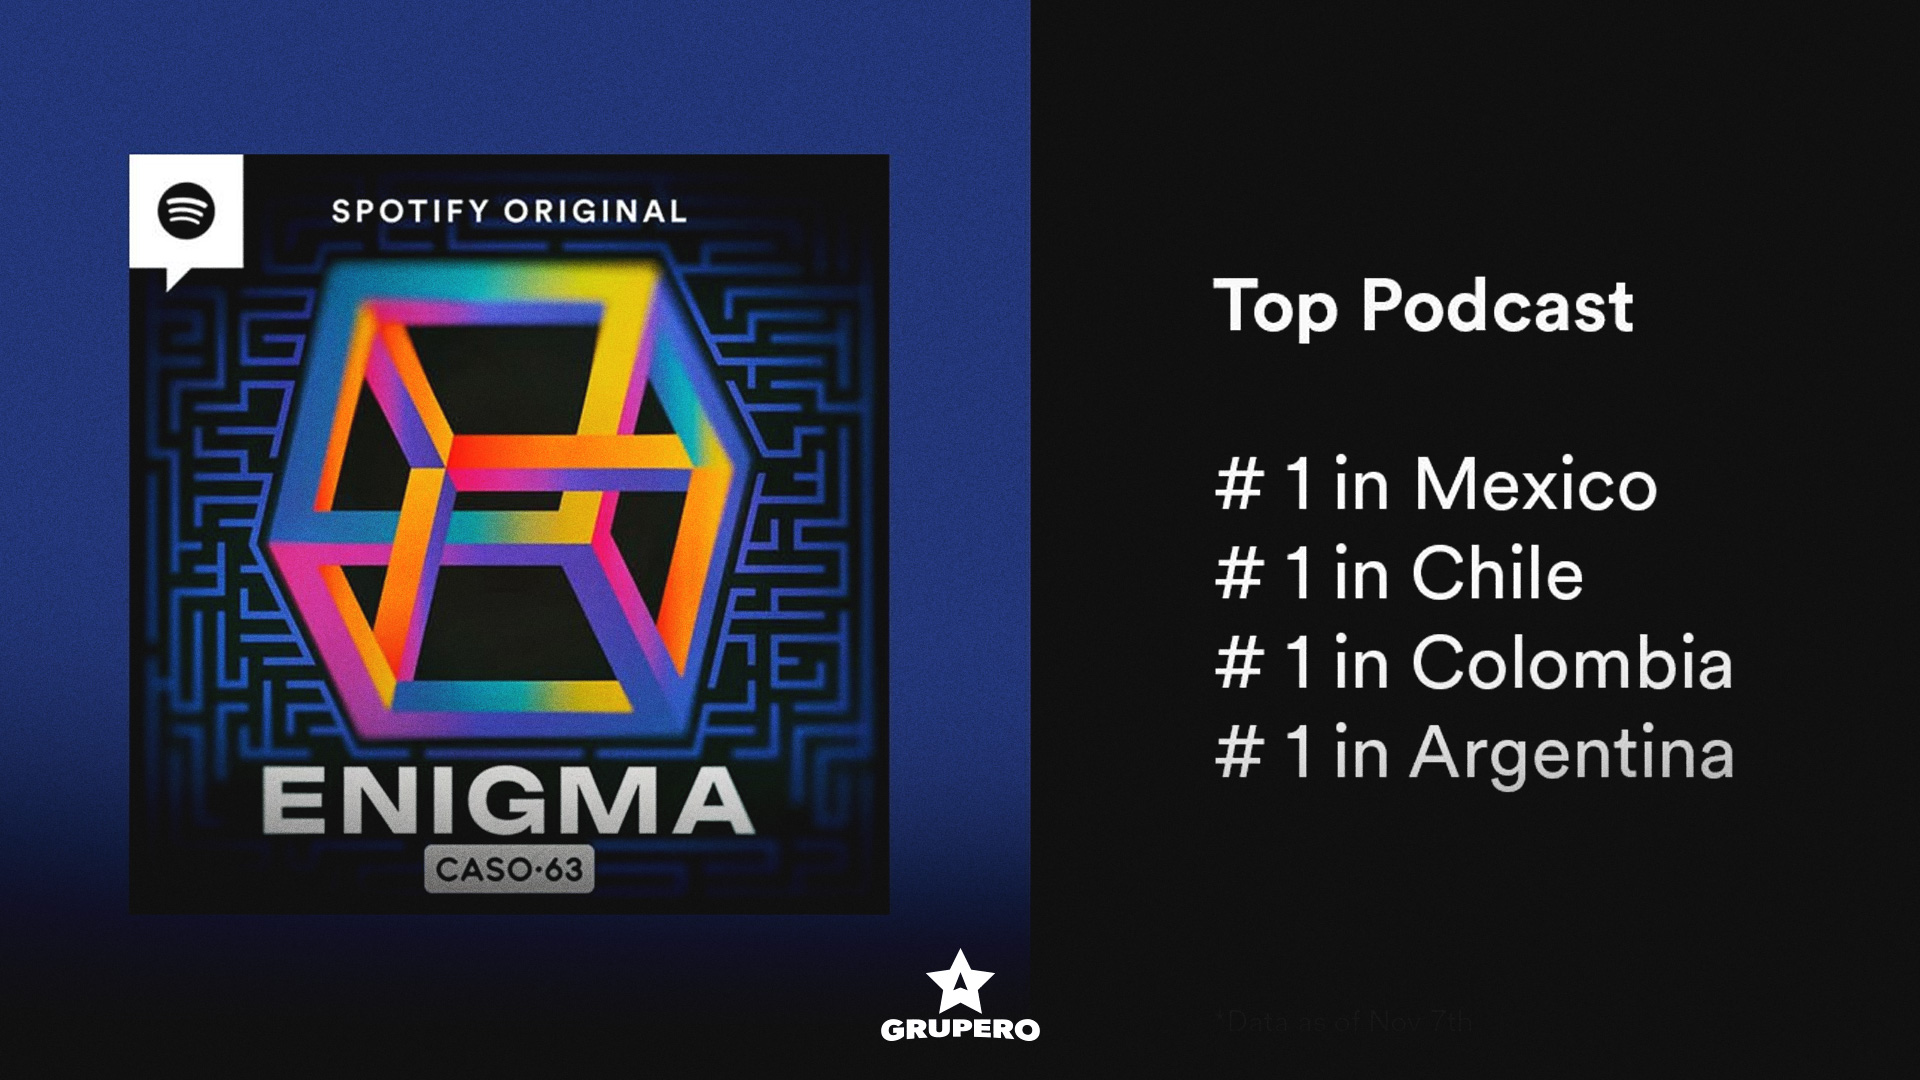 Caso 63: Enigma alcanza el #1 en el Top Podcast de México, Colombia, Argentina y Chile